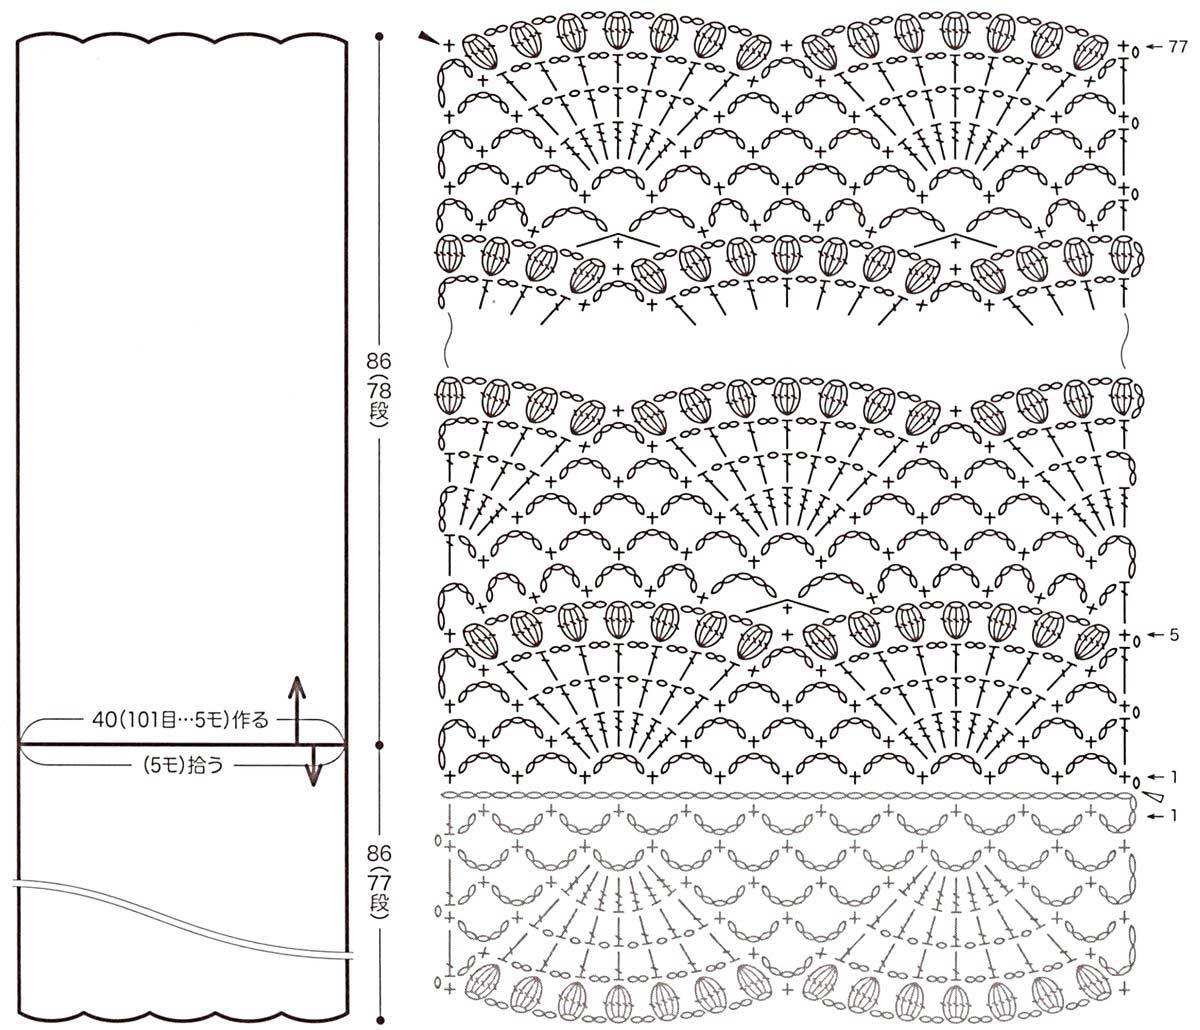 Виды вязания спицами: схемы с подробным описанием. узоры спицами простые и сложные, схемы к ним.